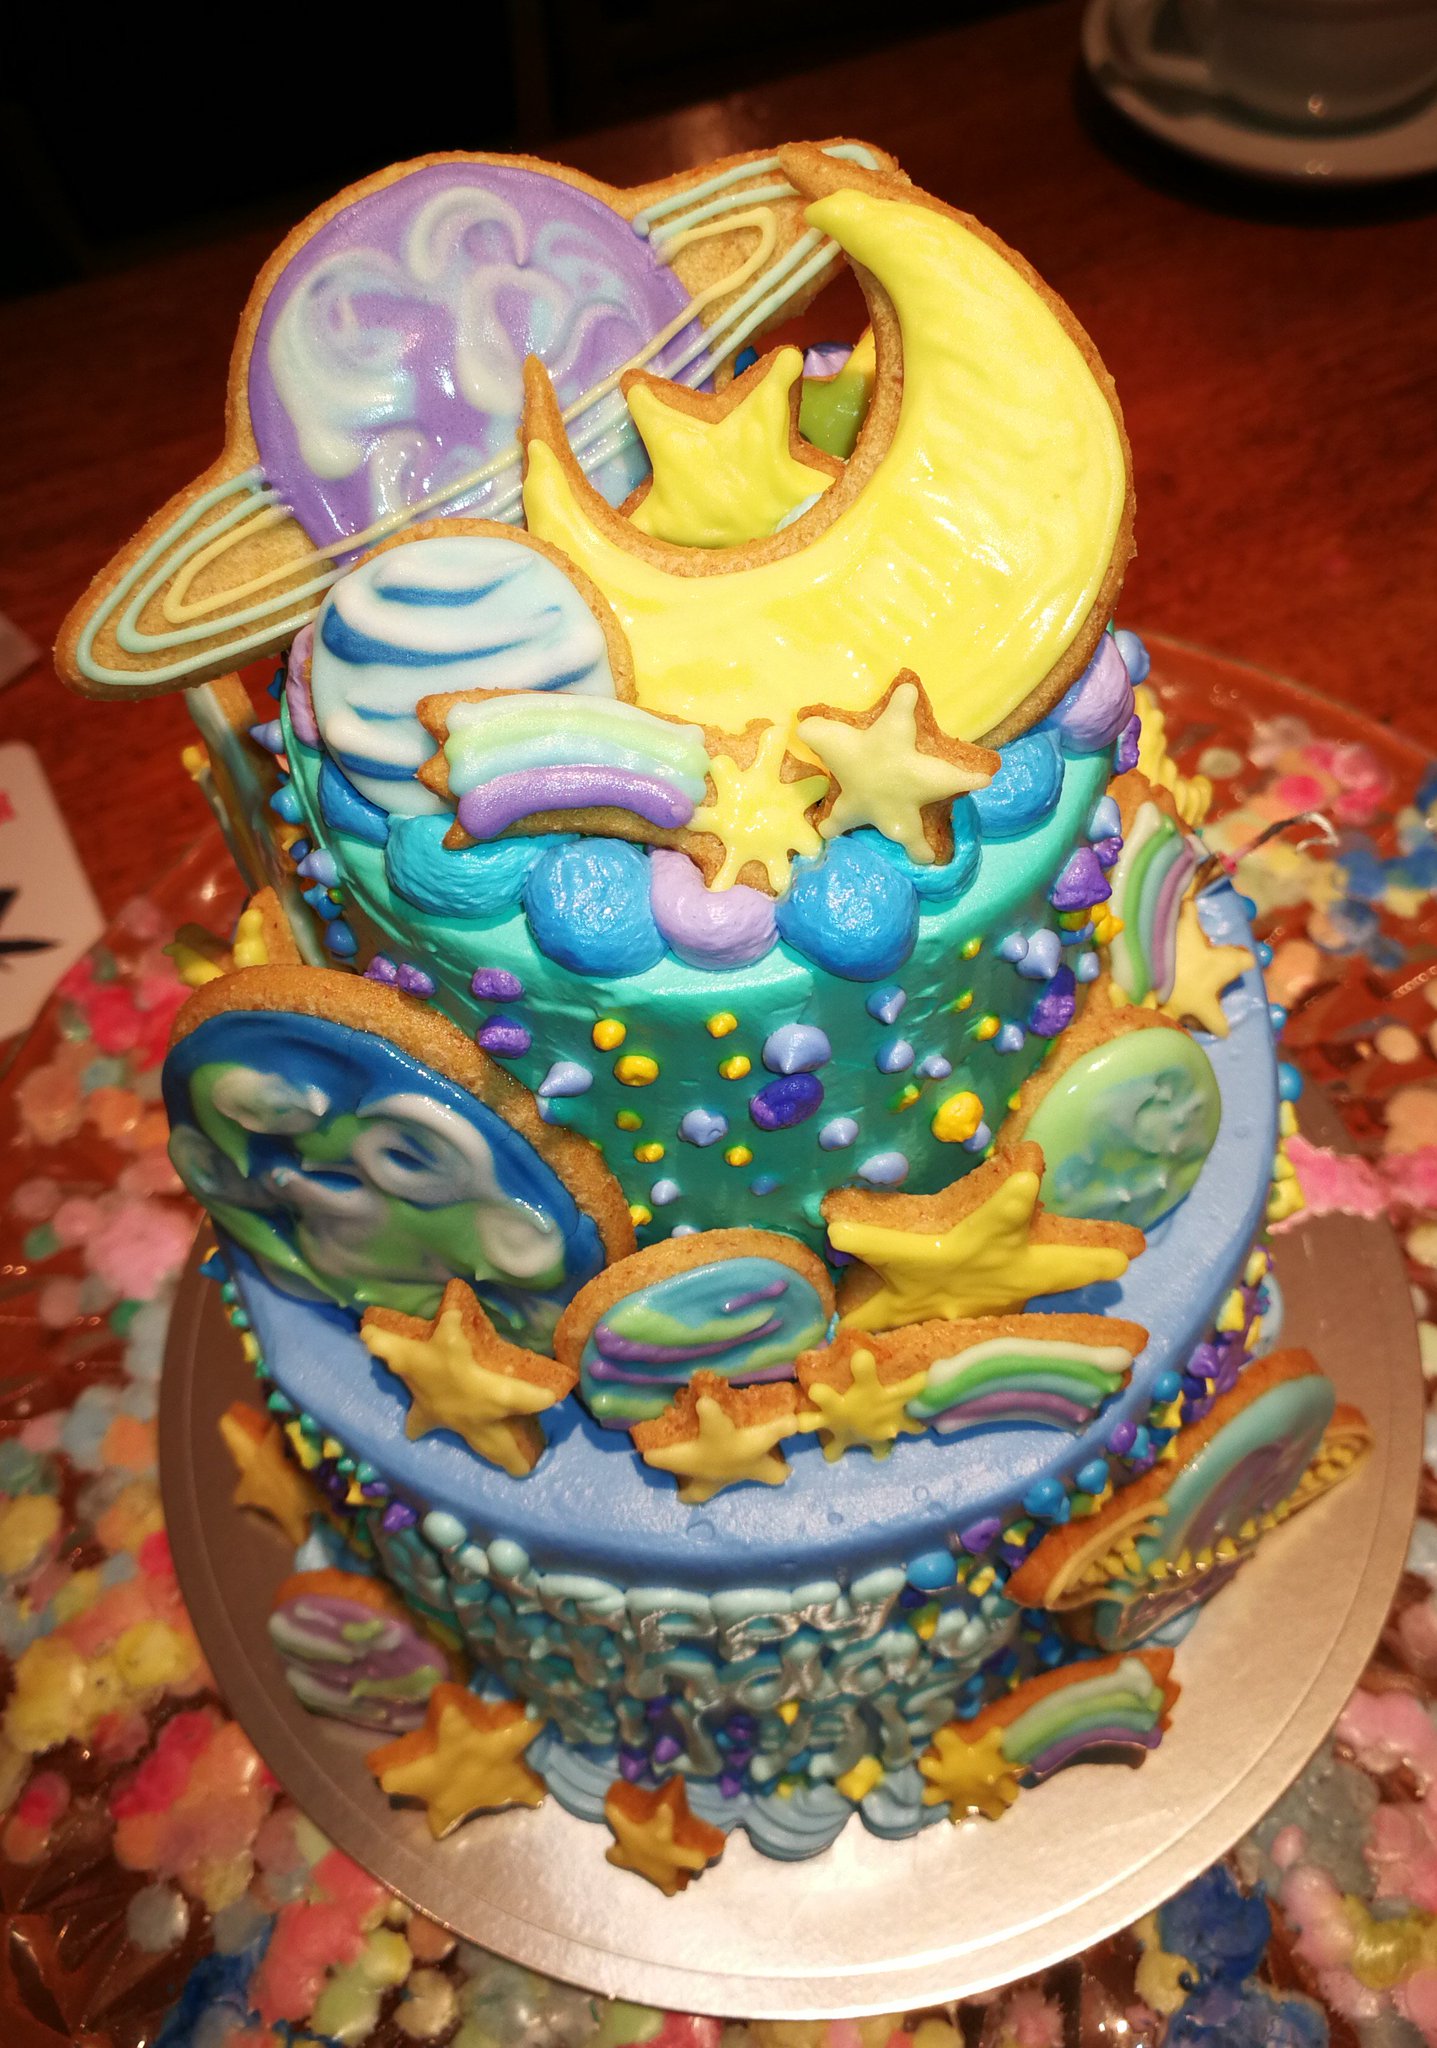 あづ美 刹那誕生祝いツアーその3 刹那のお誕生日祝い特注ケーキ 夢の二段ケーキ ハミングバーズヒルのケーキ は本当に可愛くて いつかここのケーキを注文するのが目標だった 宇宙をイメージした青ケーキ 刹那生誕祭17 刹那 F セイエイ生誕祭